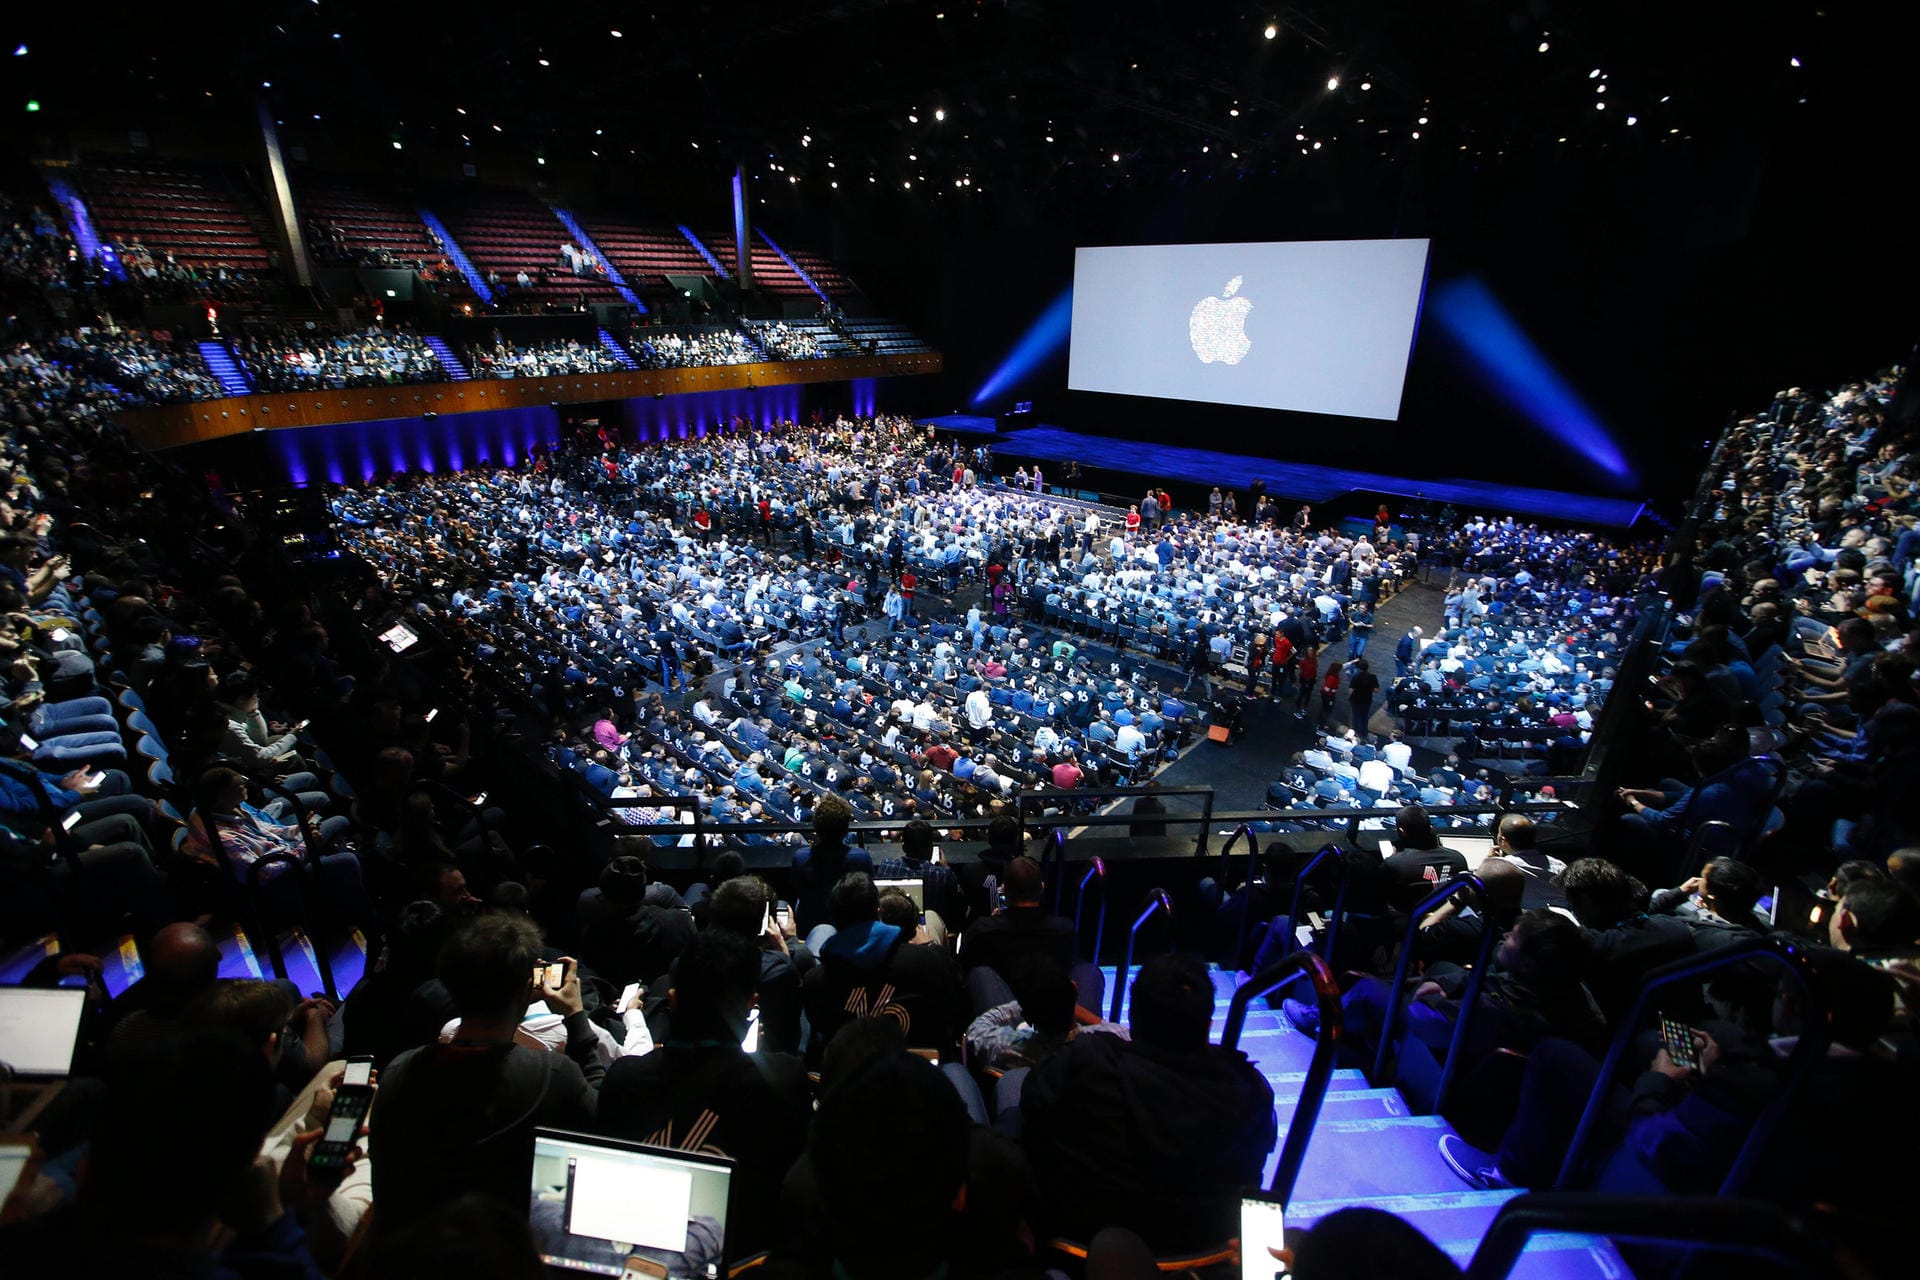 Zur Entwicklerkonferenz 2016 hatte Apple mit dem "Bill Graham Civic Auditorium" in San Francisco eine recht große Halle für seine Keynote-Präsentation gewählt.